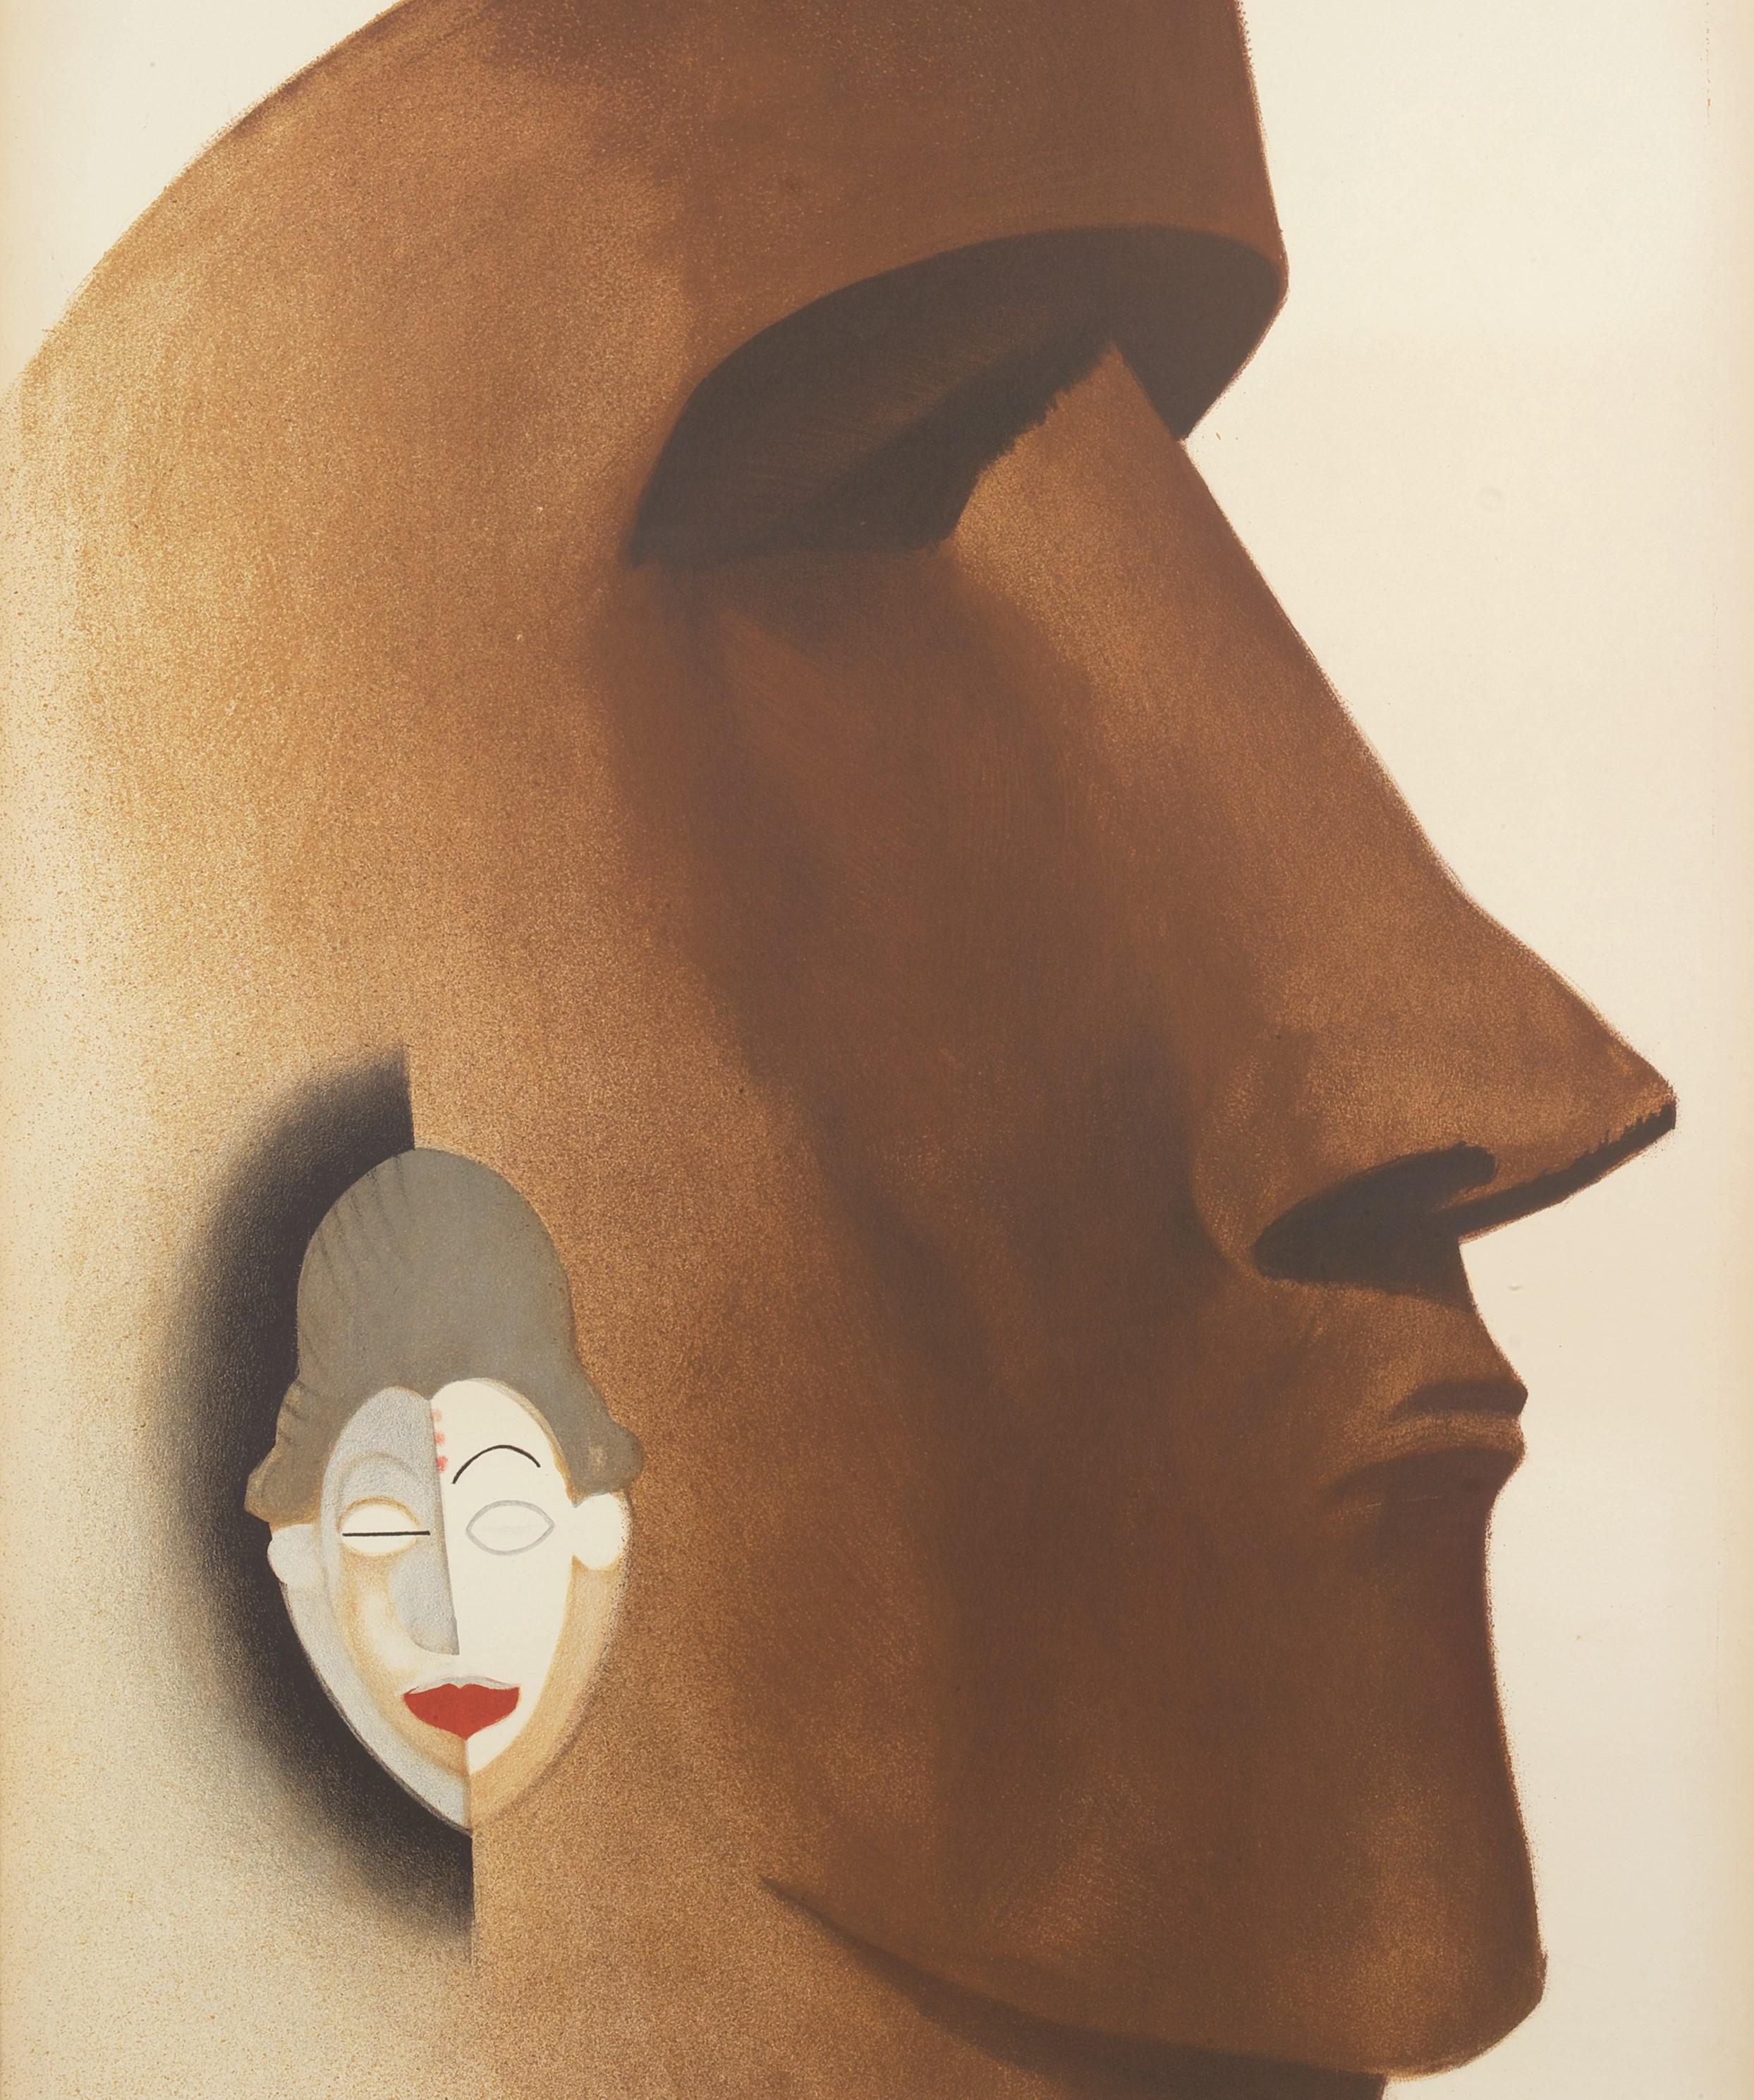 Art-Deco-Poster mit afrikanischer und ozeanischer Inspiration, das eine Punu-Maske aus Gabun und eine monumentale Moai-Statue von den Osterinseln zeigt.

Paul Colin (27. Juni 1892 - 18. Juni 1985) geboren in Nancy, Frankreich, gestorben in